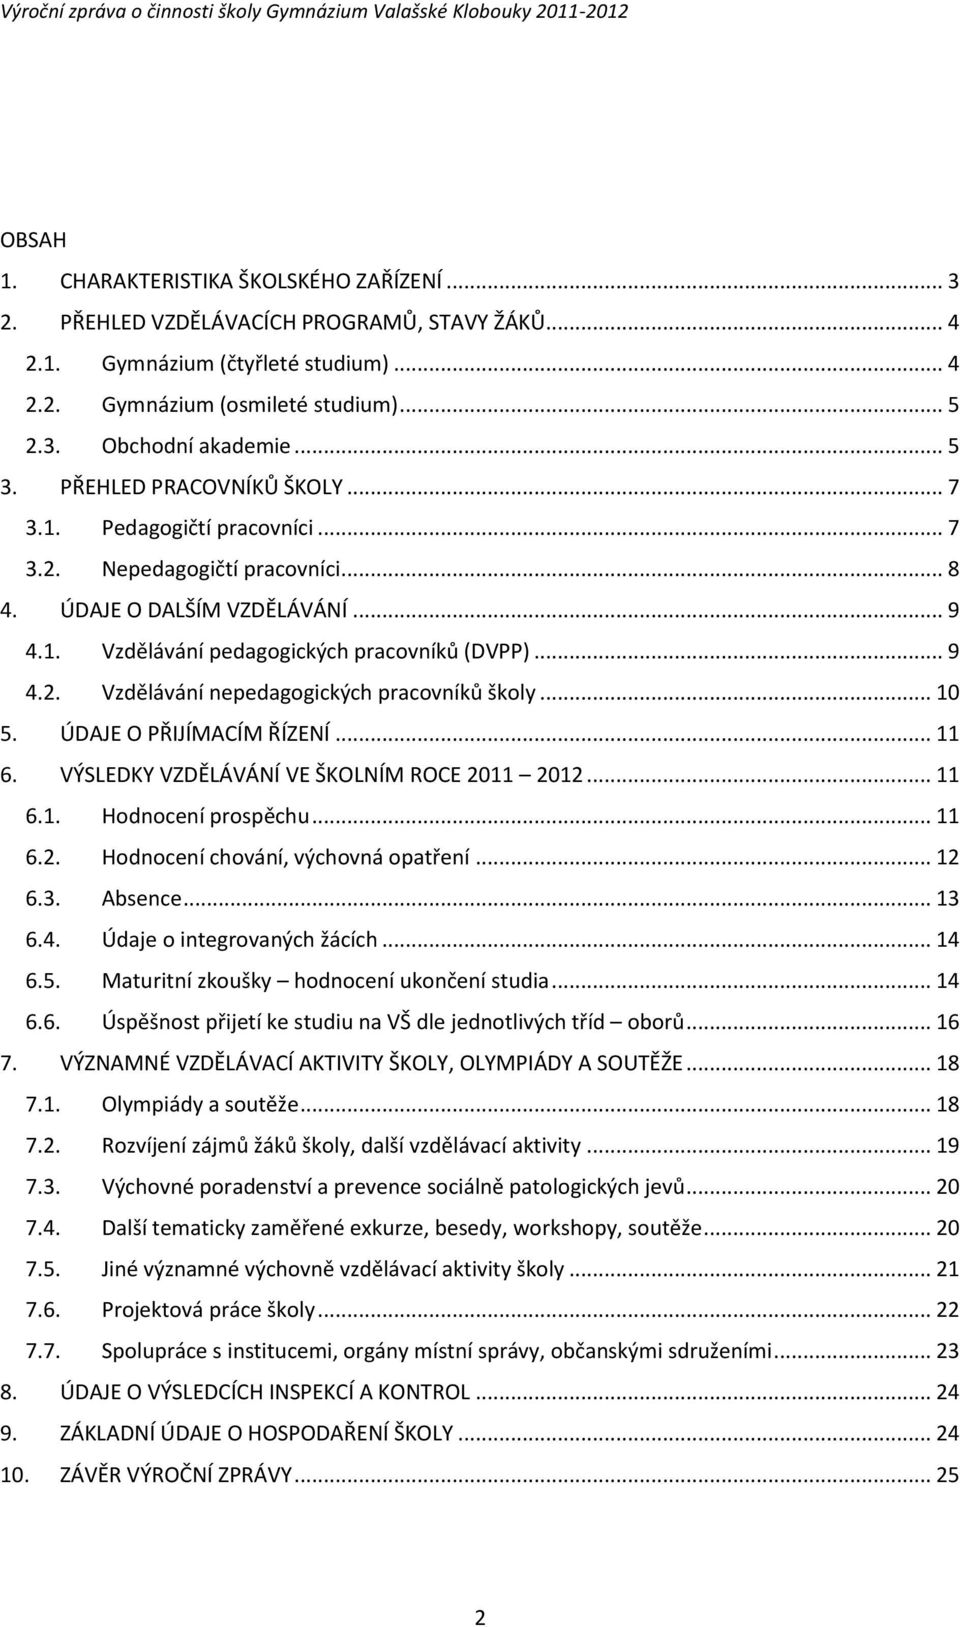 GYMNÁZIUM VALAŠSKÉ KLOBOUKY - PDF Free Download